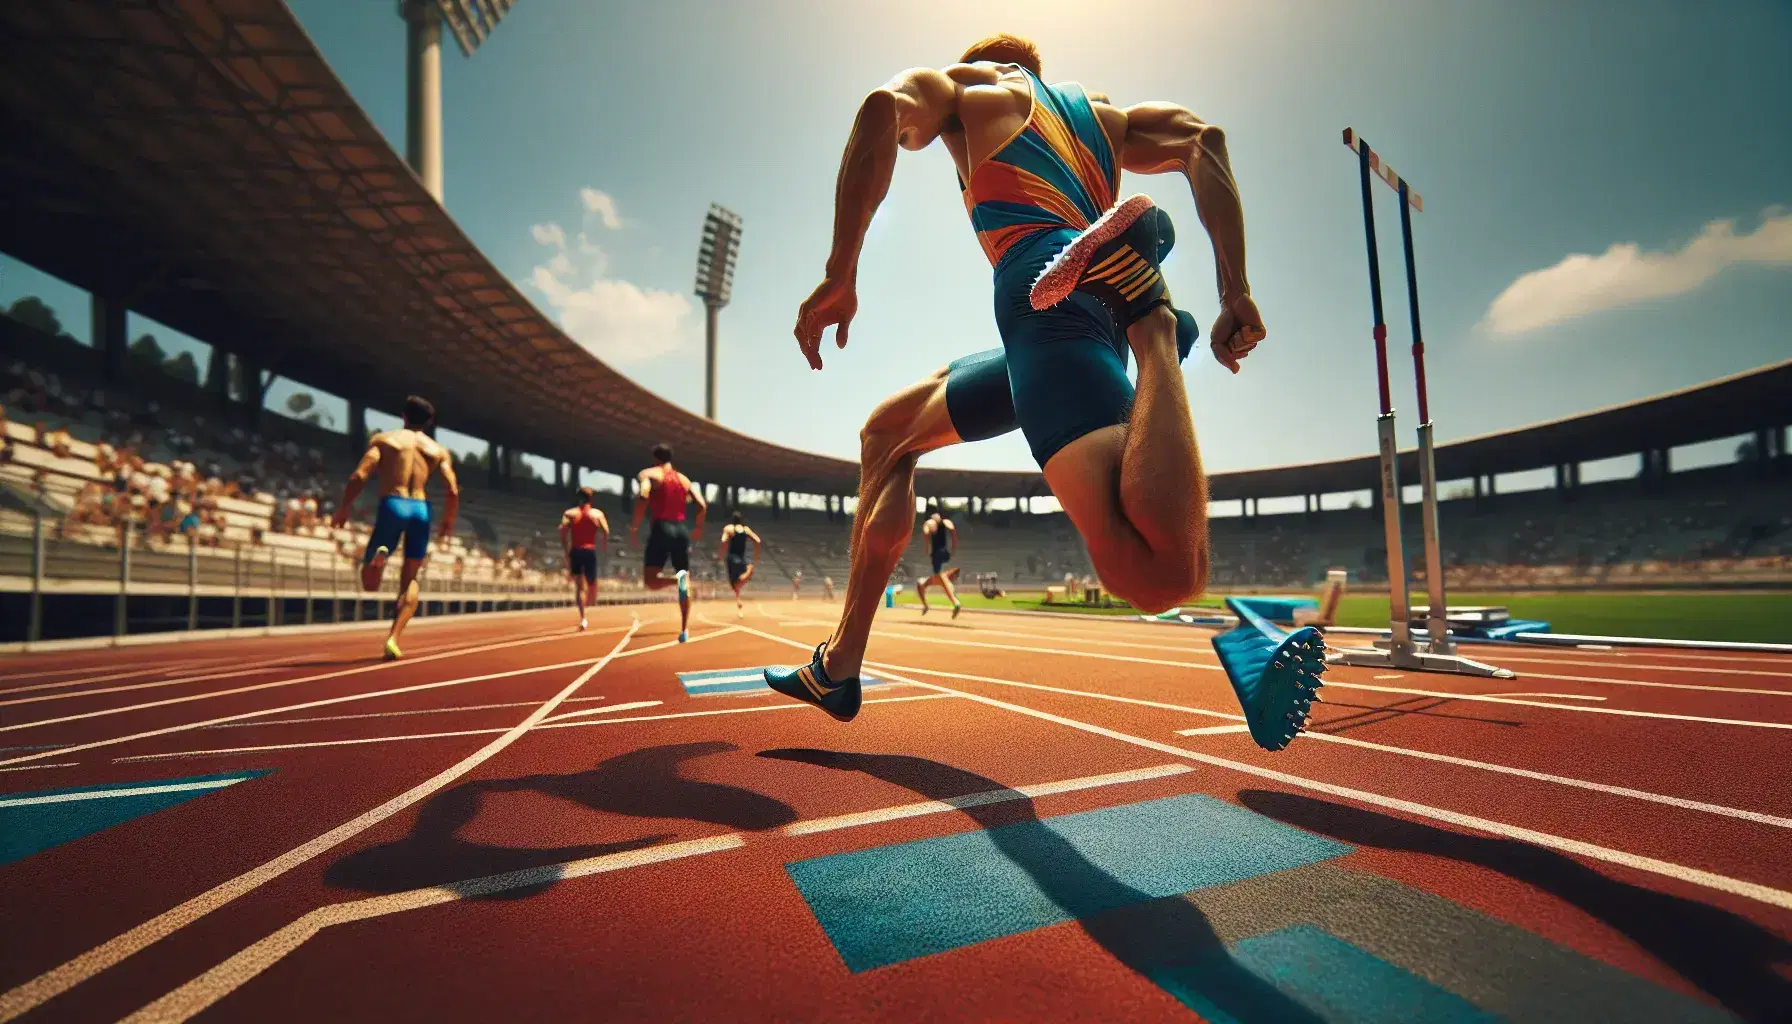 Atleta masculino compitiendo en pista de atletismo al aire libre, corriendo con uniforme azul y amarillo en día soleado, sin público en las gradas.